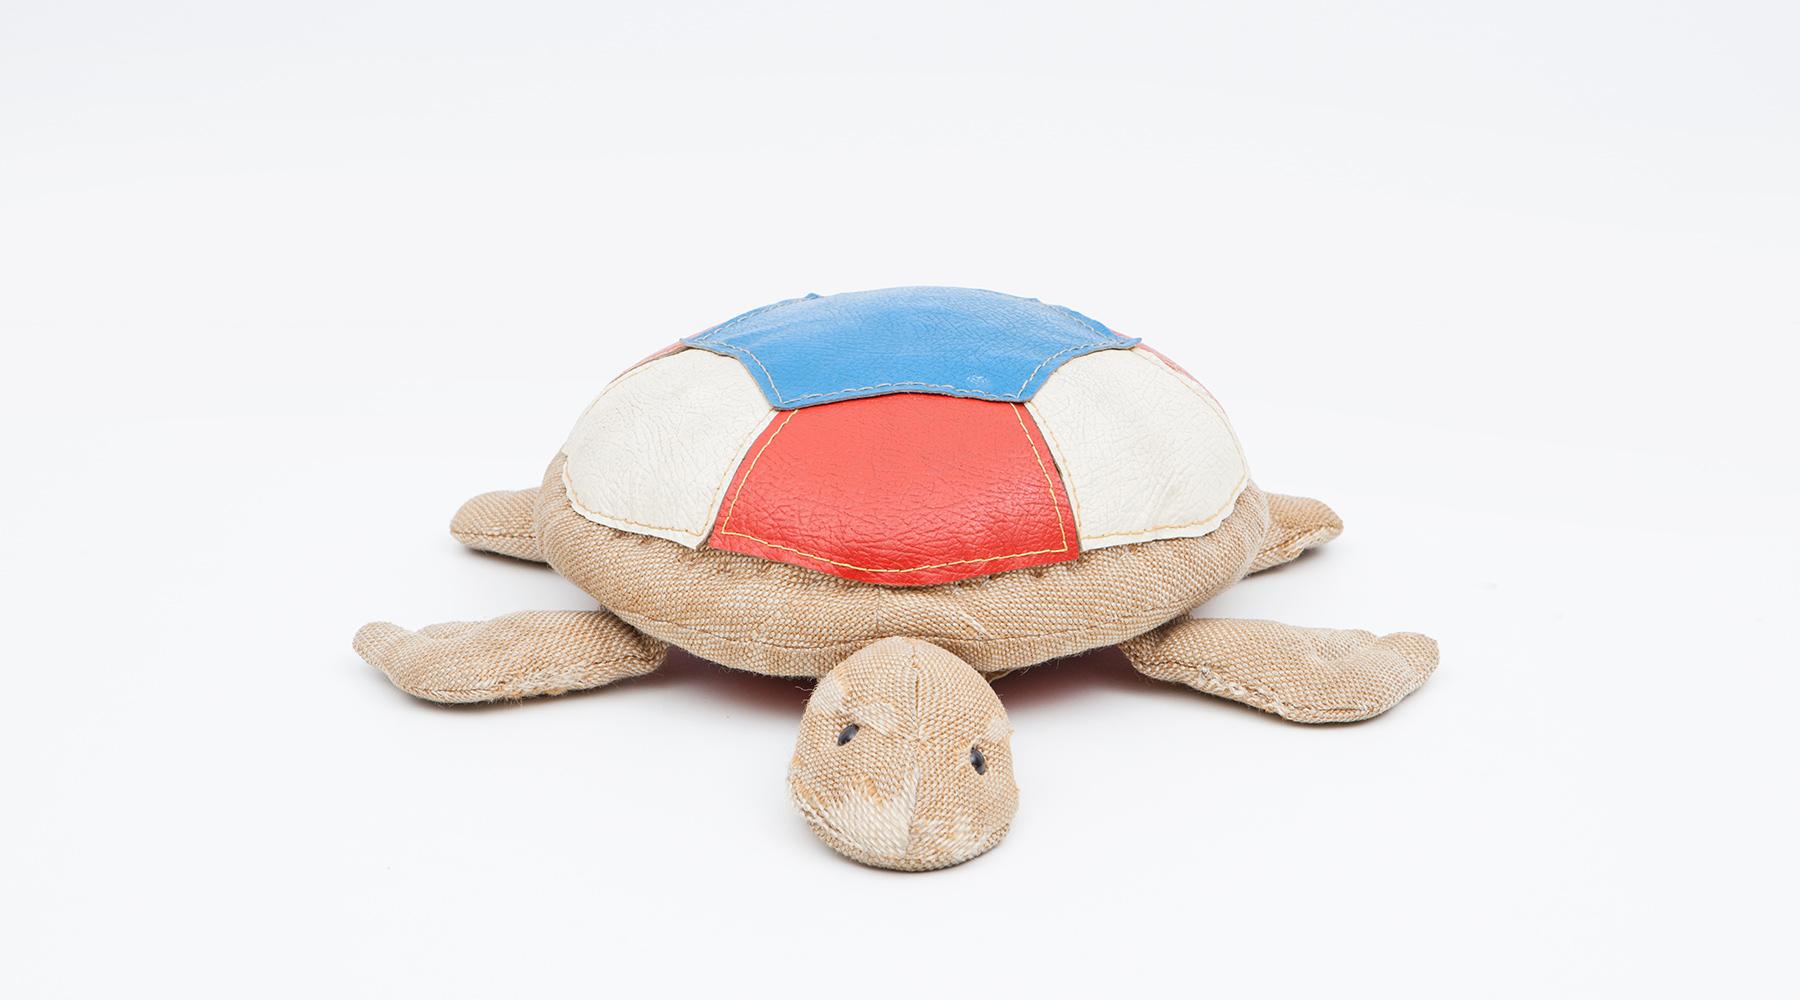 Schildkröte, Kinderspielzeug aus Jute und Leder von Renate Müller, Deutschland, 1971.

Authentisches Tierspielzeug aus den 1970er Jahren von Renate Müller. Einzigartig in Form und Verarbeitung. Dieses Beispiel zeigt eine Skateschnecke aus Jute auf